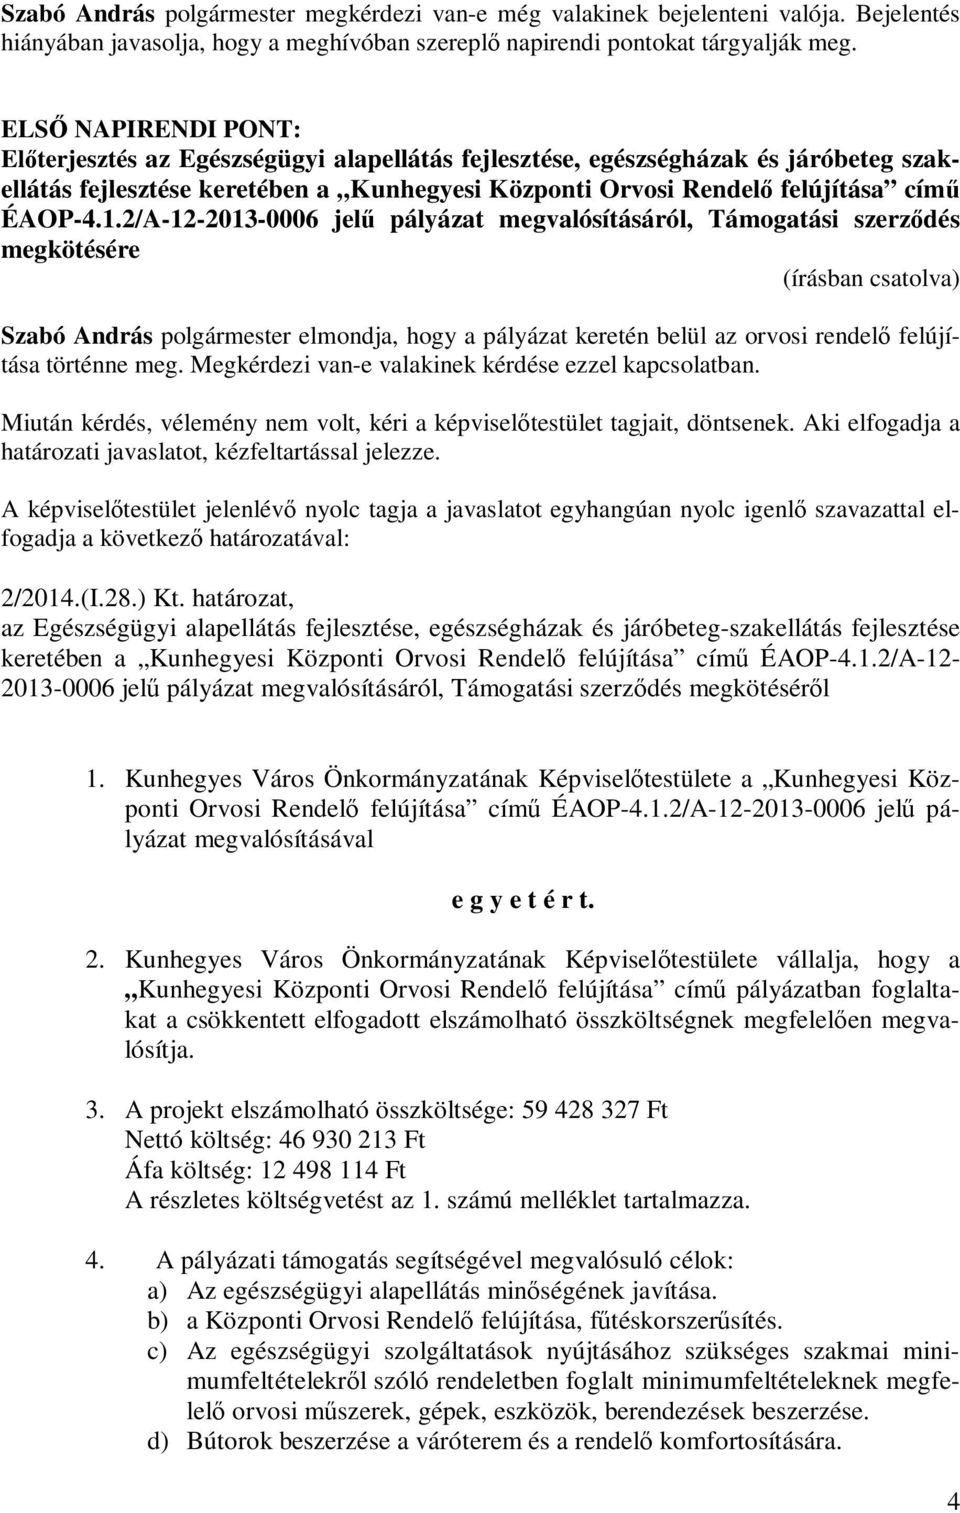 2/A-12-2013-0006 jelű pályázat megvalósításáról, Támogatási szerződés megkötésére Szabó András polgármester elmondja, hogy a pályázat keretén belül az orvosi rendelő felújítása történne meg.